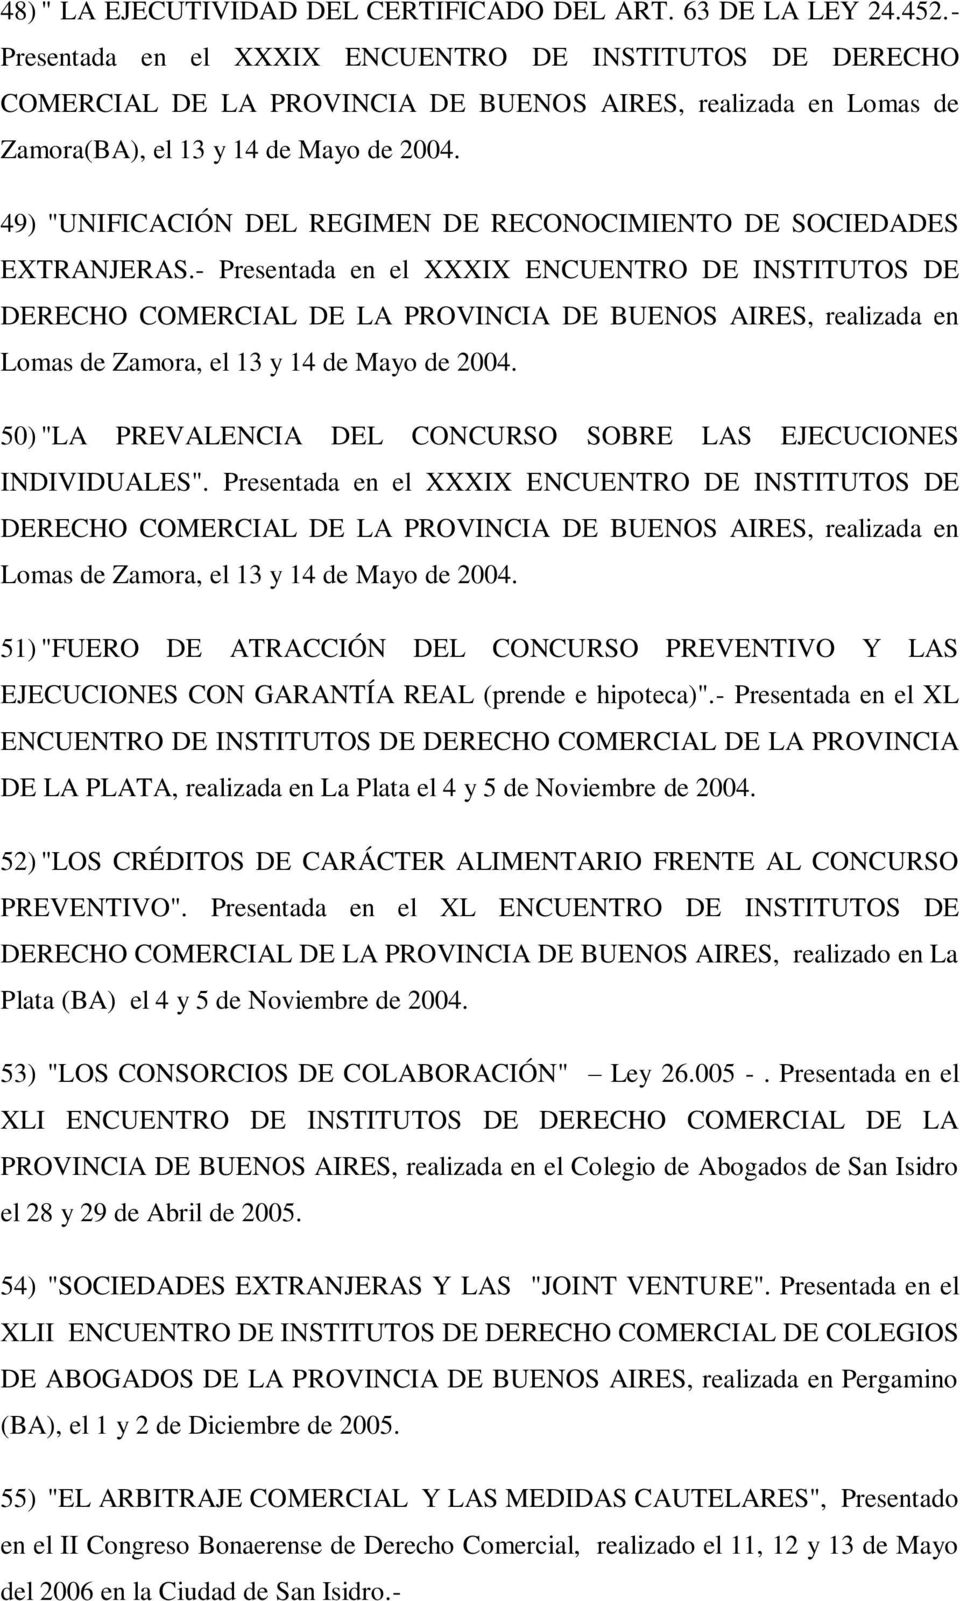 49) "UNIFICACIÓN DEL REGIMEN DE RECONOCIMIENTO DE SOCIEDADES EXTRANJERAS.